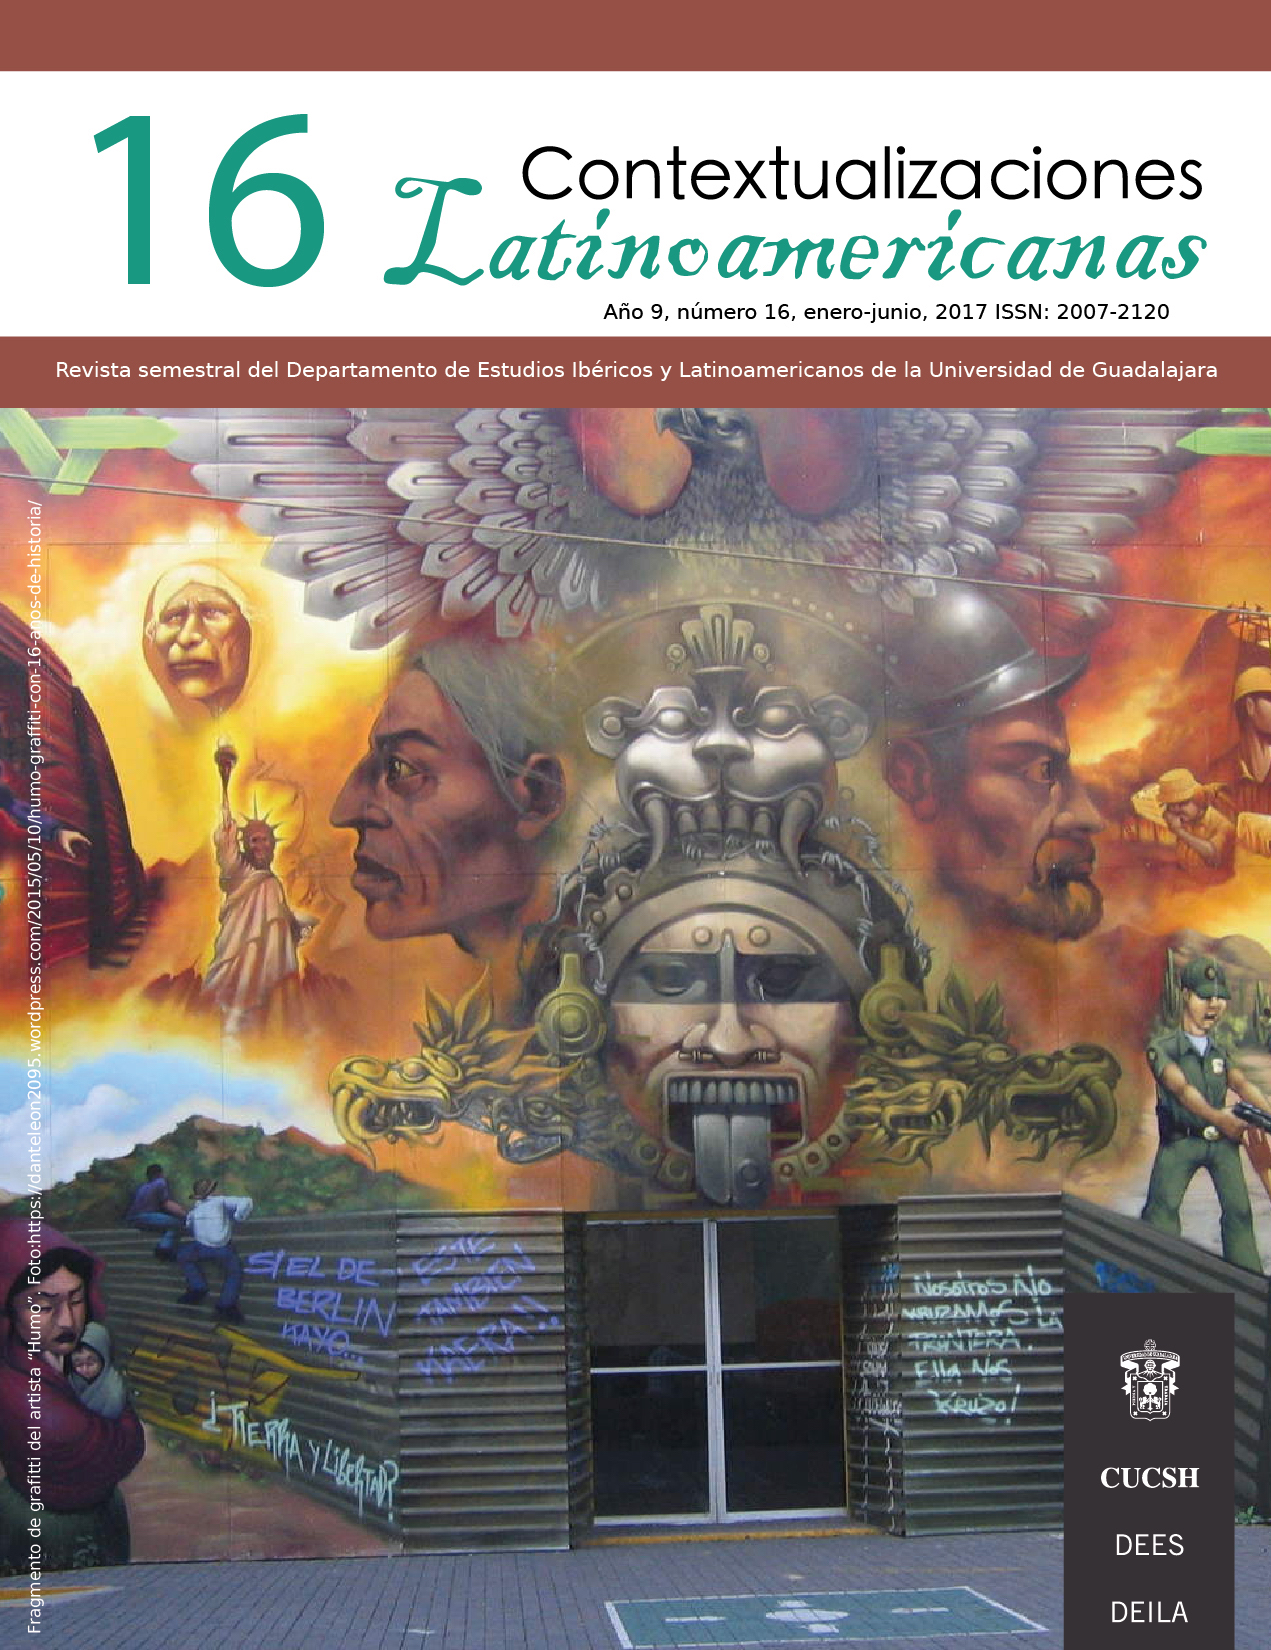 					Ver Vol. 1 Núm. 16 (10):  Revista Contextualizaciones Latinoamericanas. Número 16 Enero- Junio 2017
				